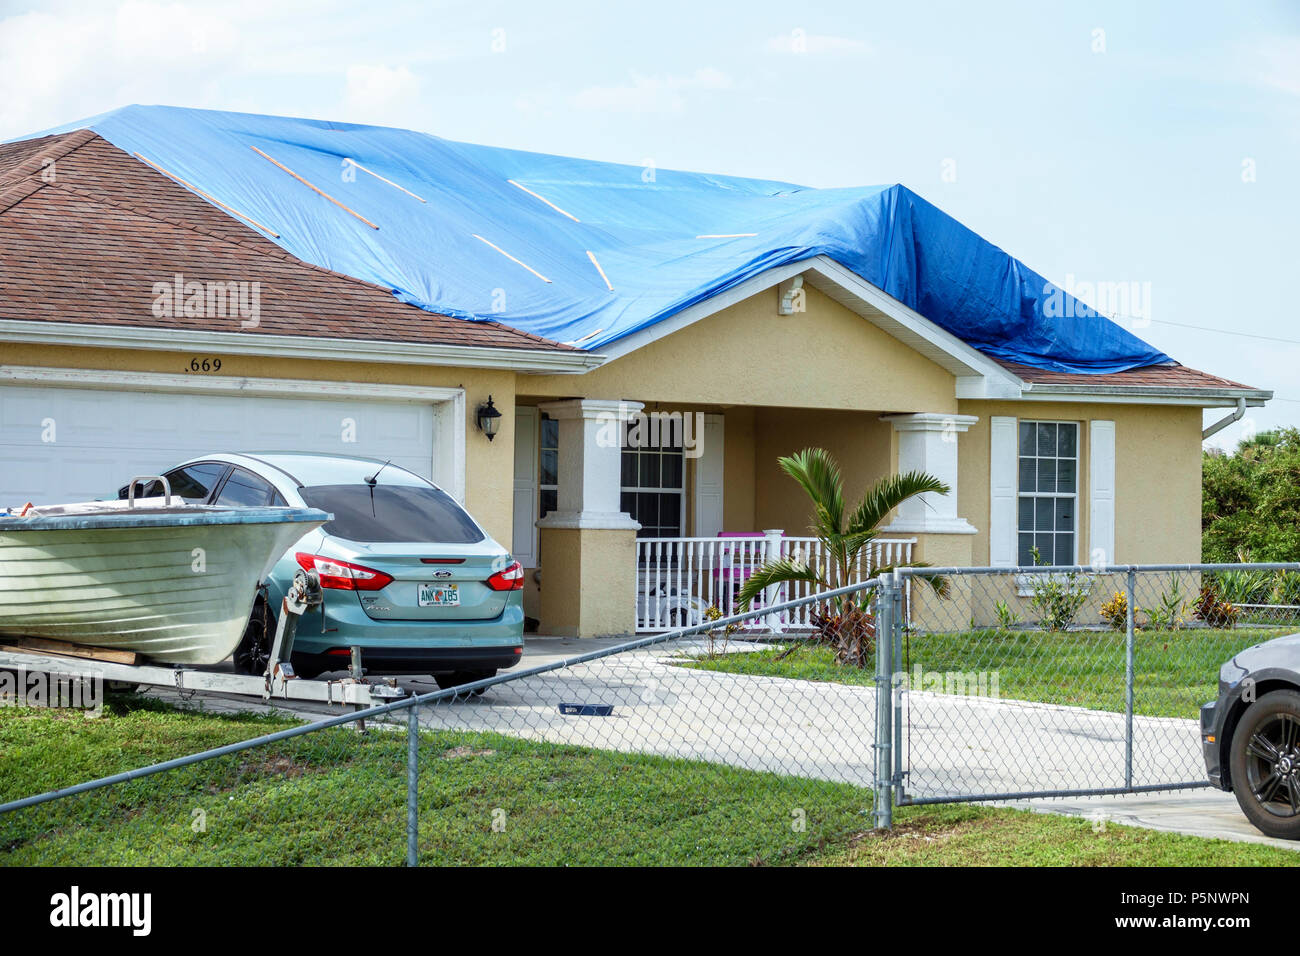 Fort ft. Myers Florida,Lehigh Acres,après l'ouragan Irma tempête dégâts de vent après la destruction, bâche bleue imperméable couvrant le toit, maison maisons Banque D'Images